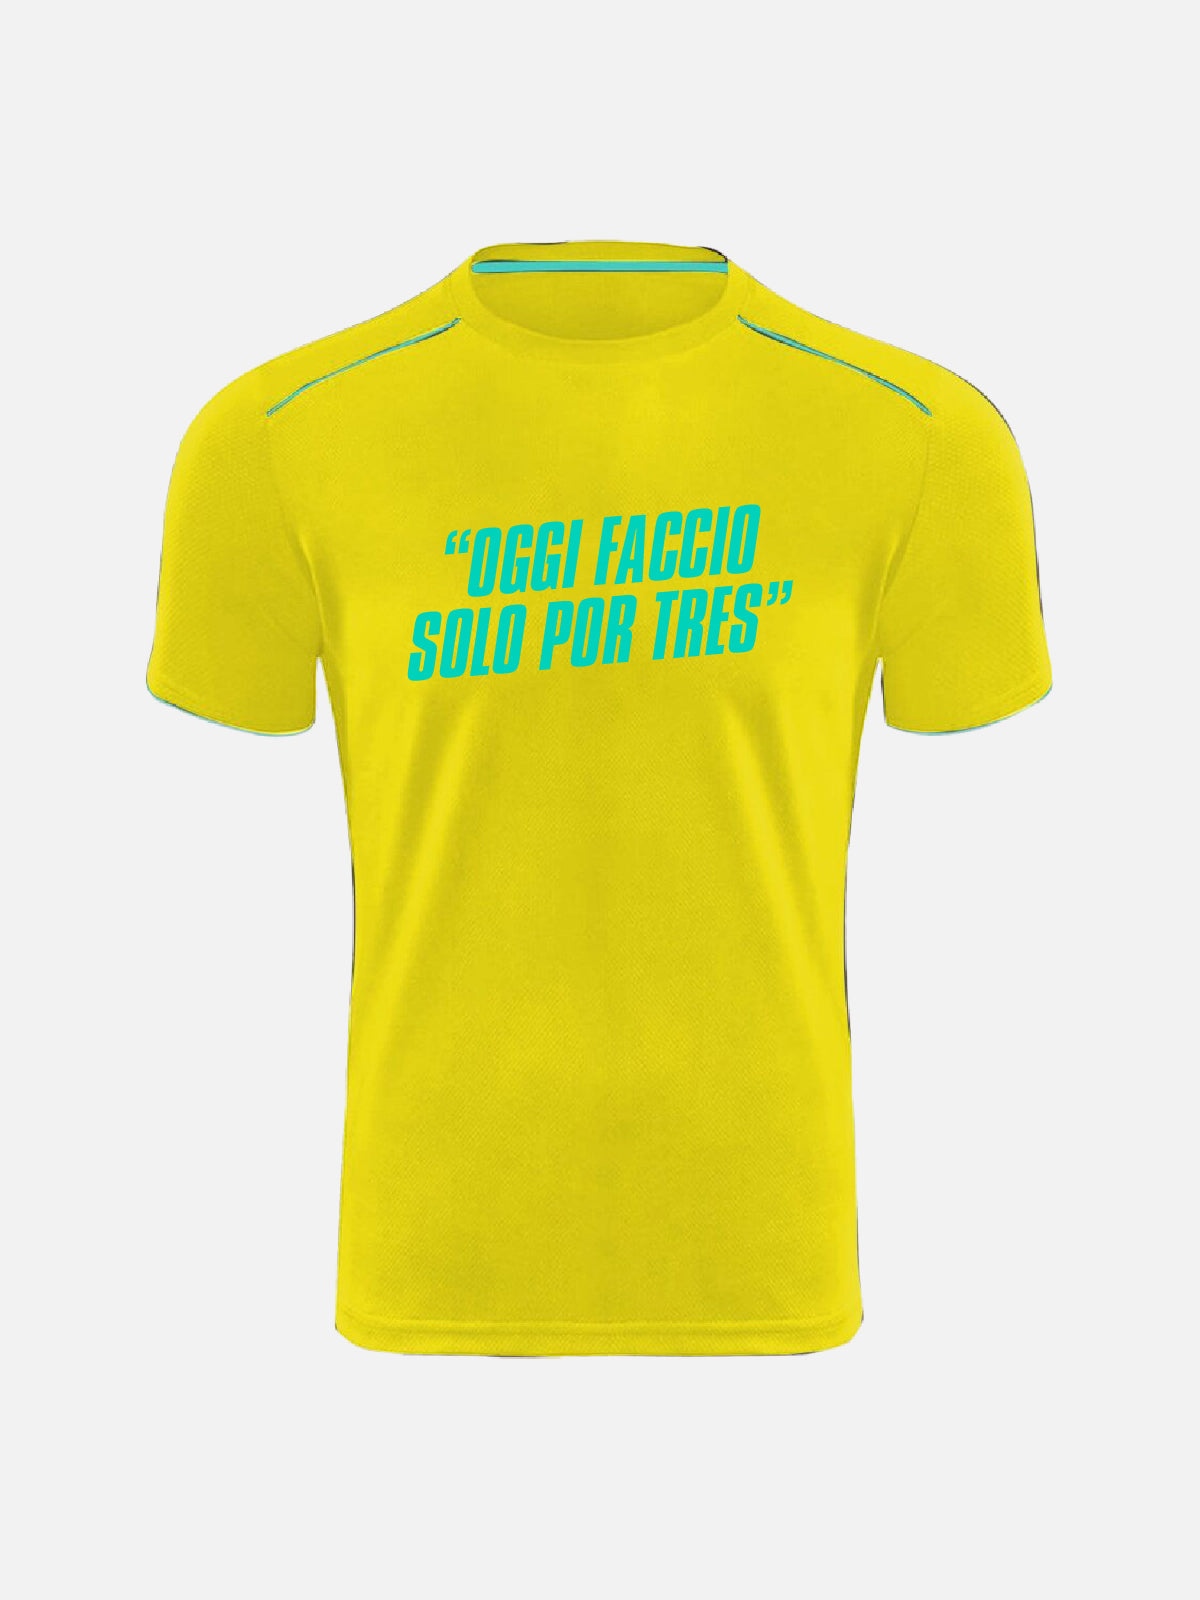 T-shirt - "Oggi Faccio Solo Por Tres"